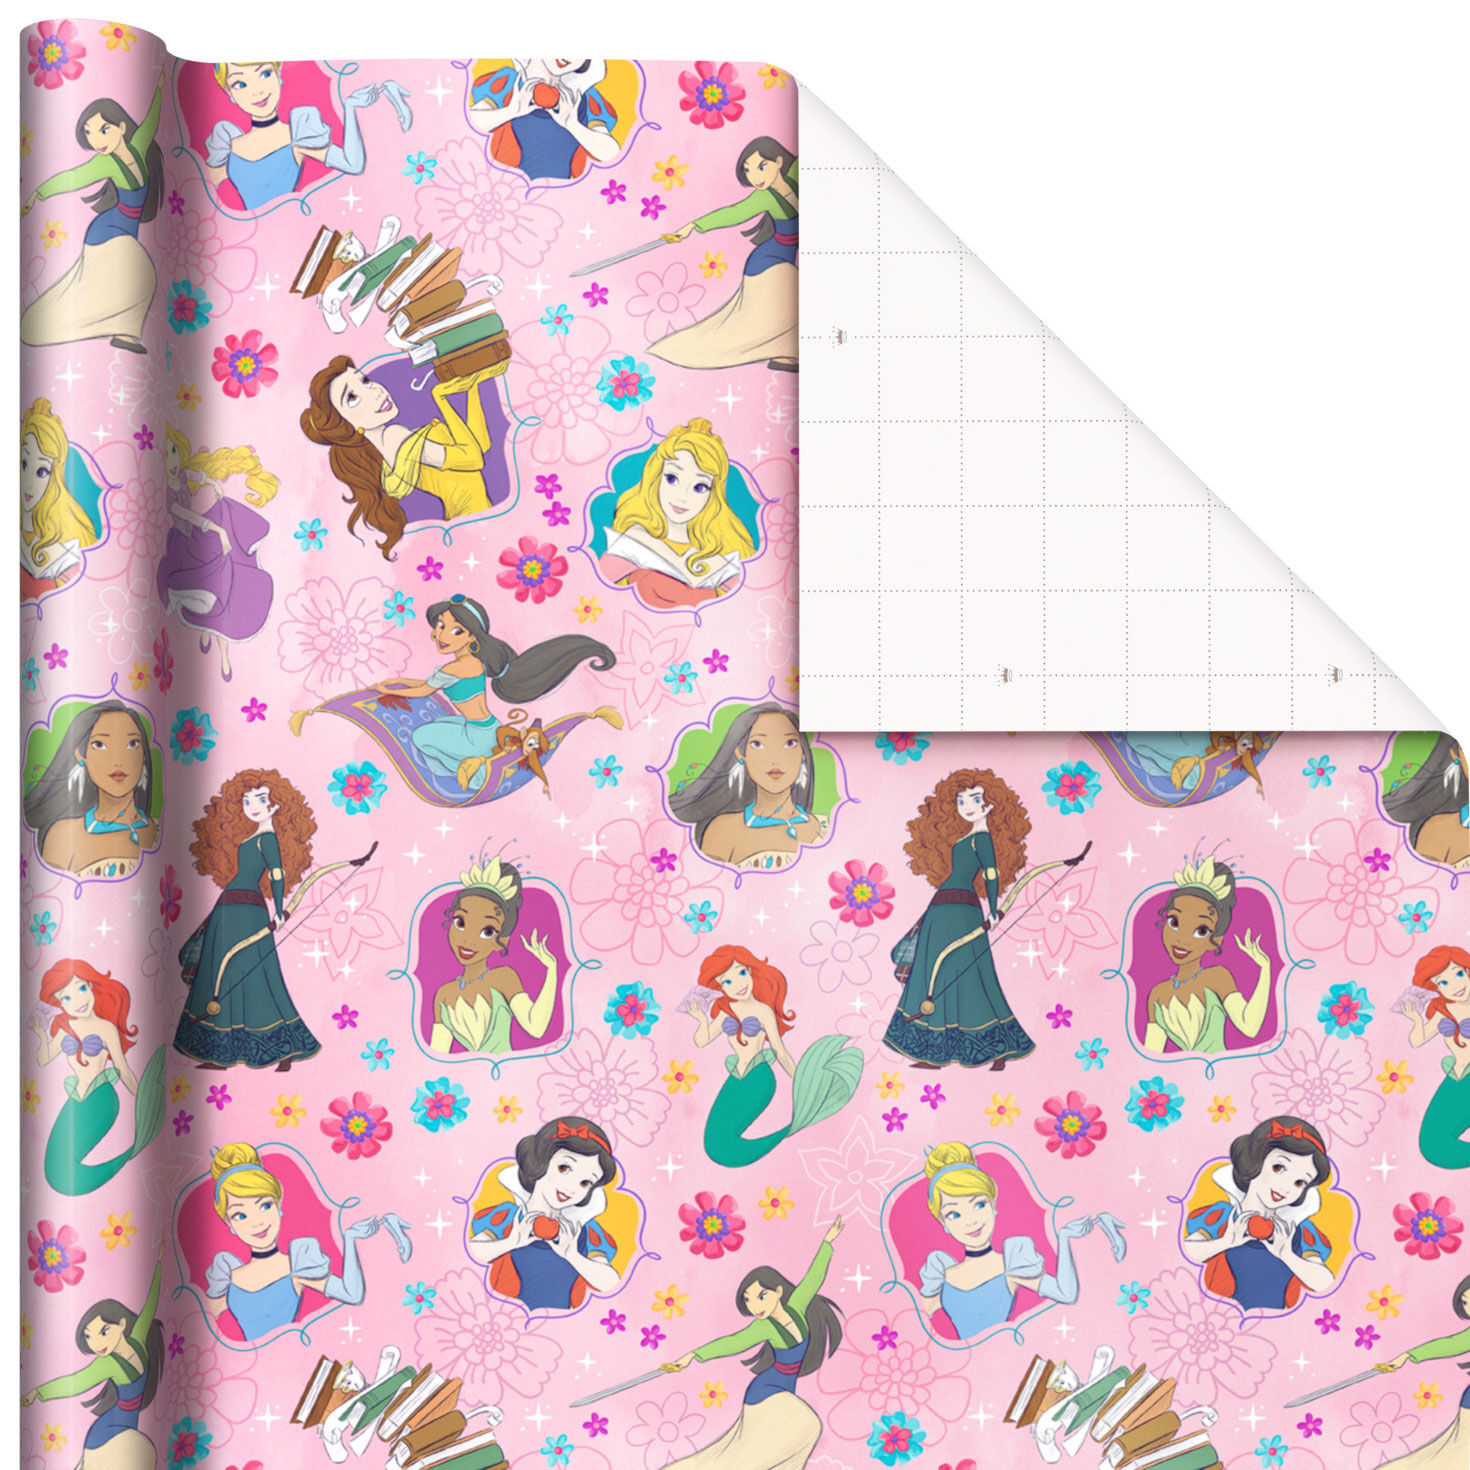 Disney Princess Snow White Gift Party Birthday Bag New 13" x 9" x 4" 